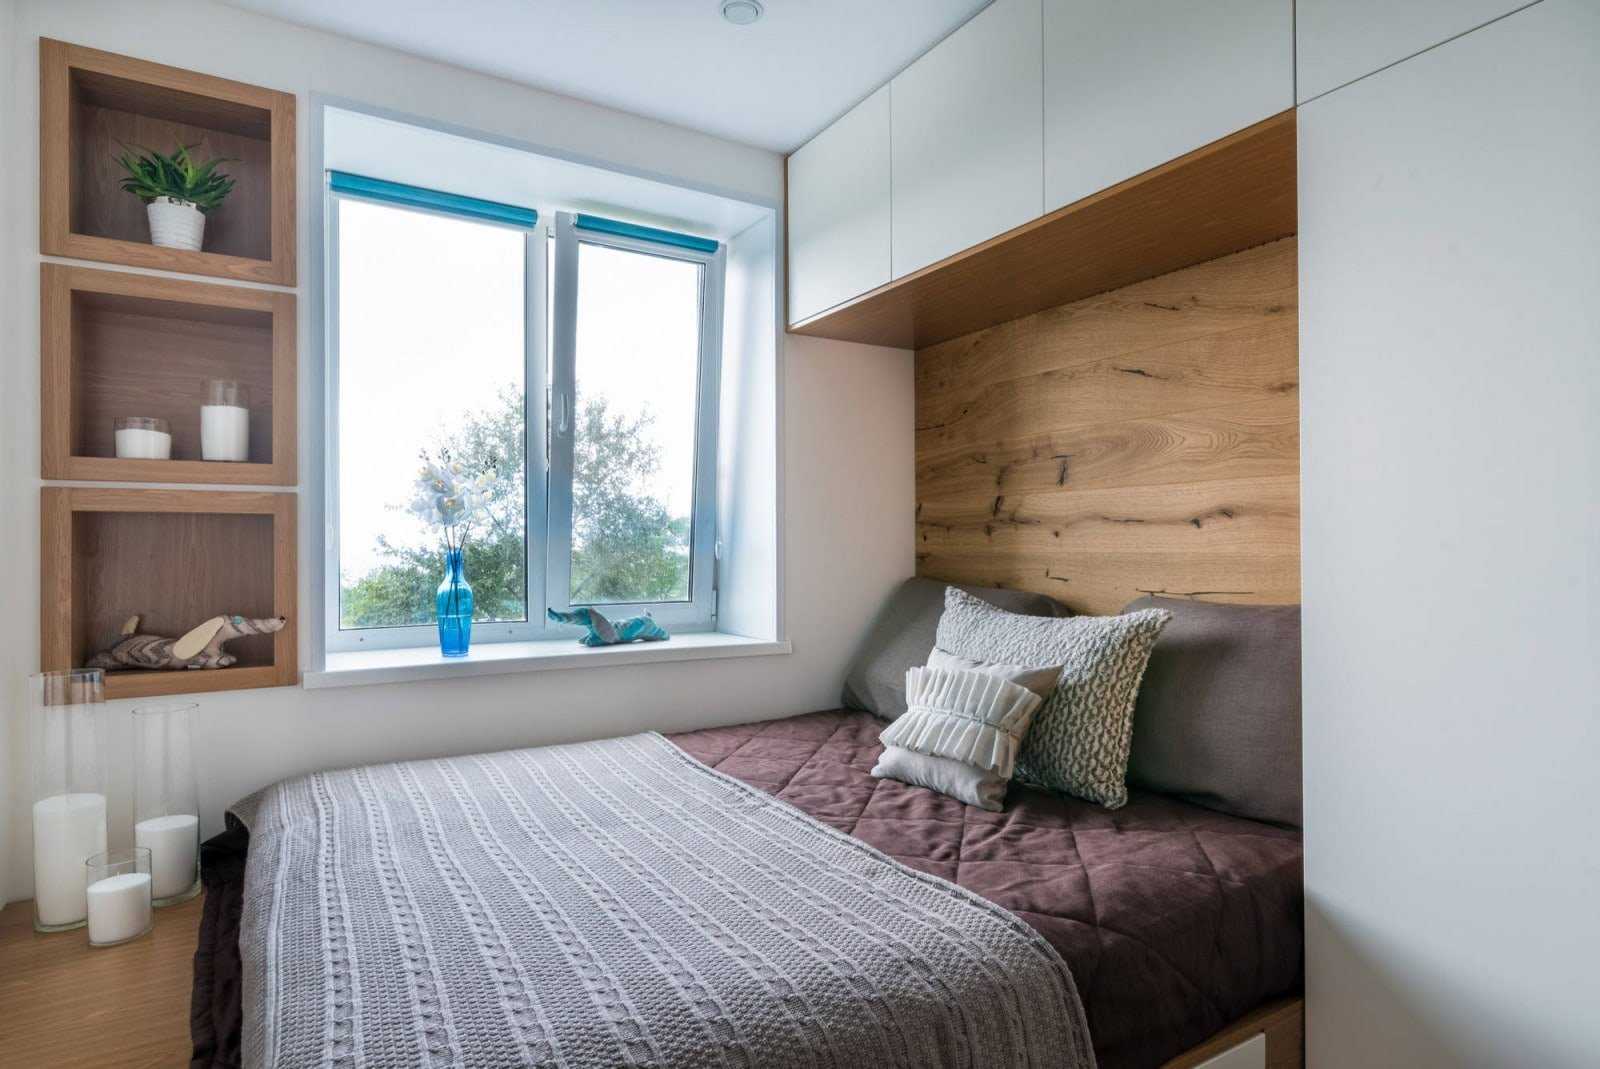 Кровать у окна в спальне дизайн, что делать со шторами Варианты расположения стоит изголовьем к окну, расположена вдоль него и напротив возле стены